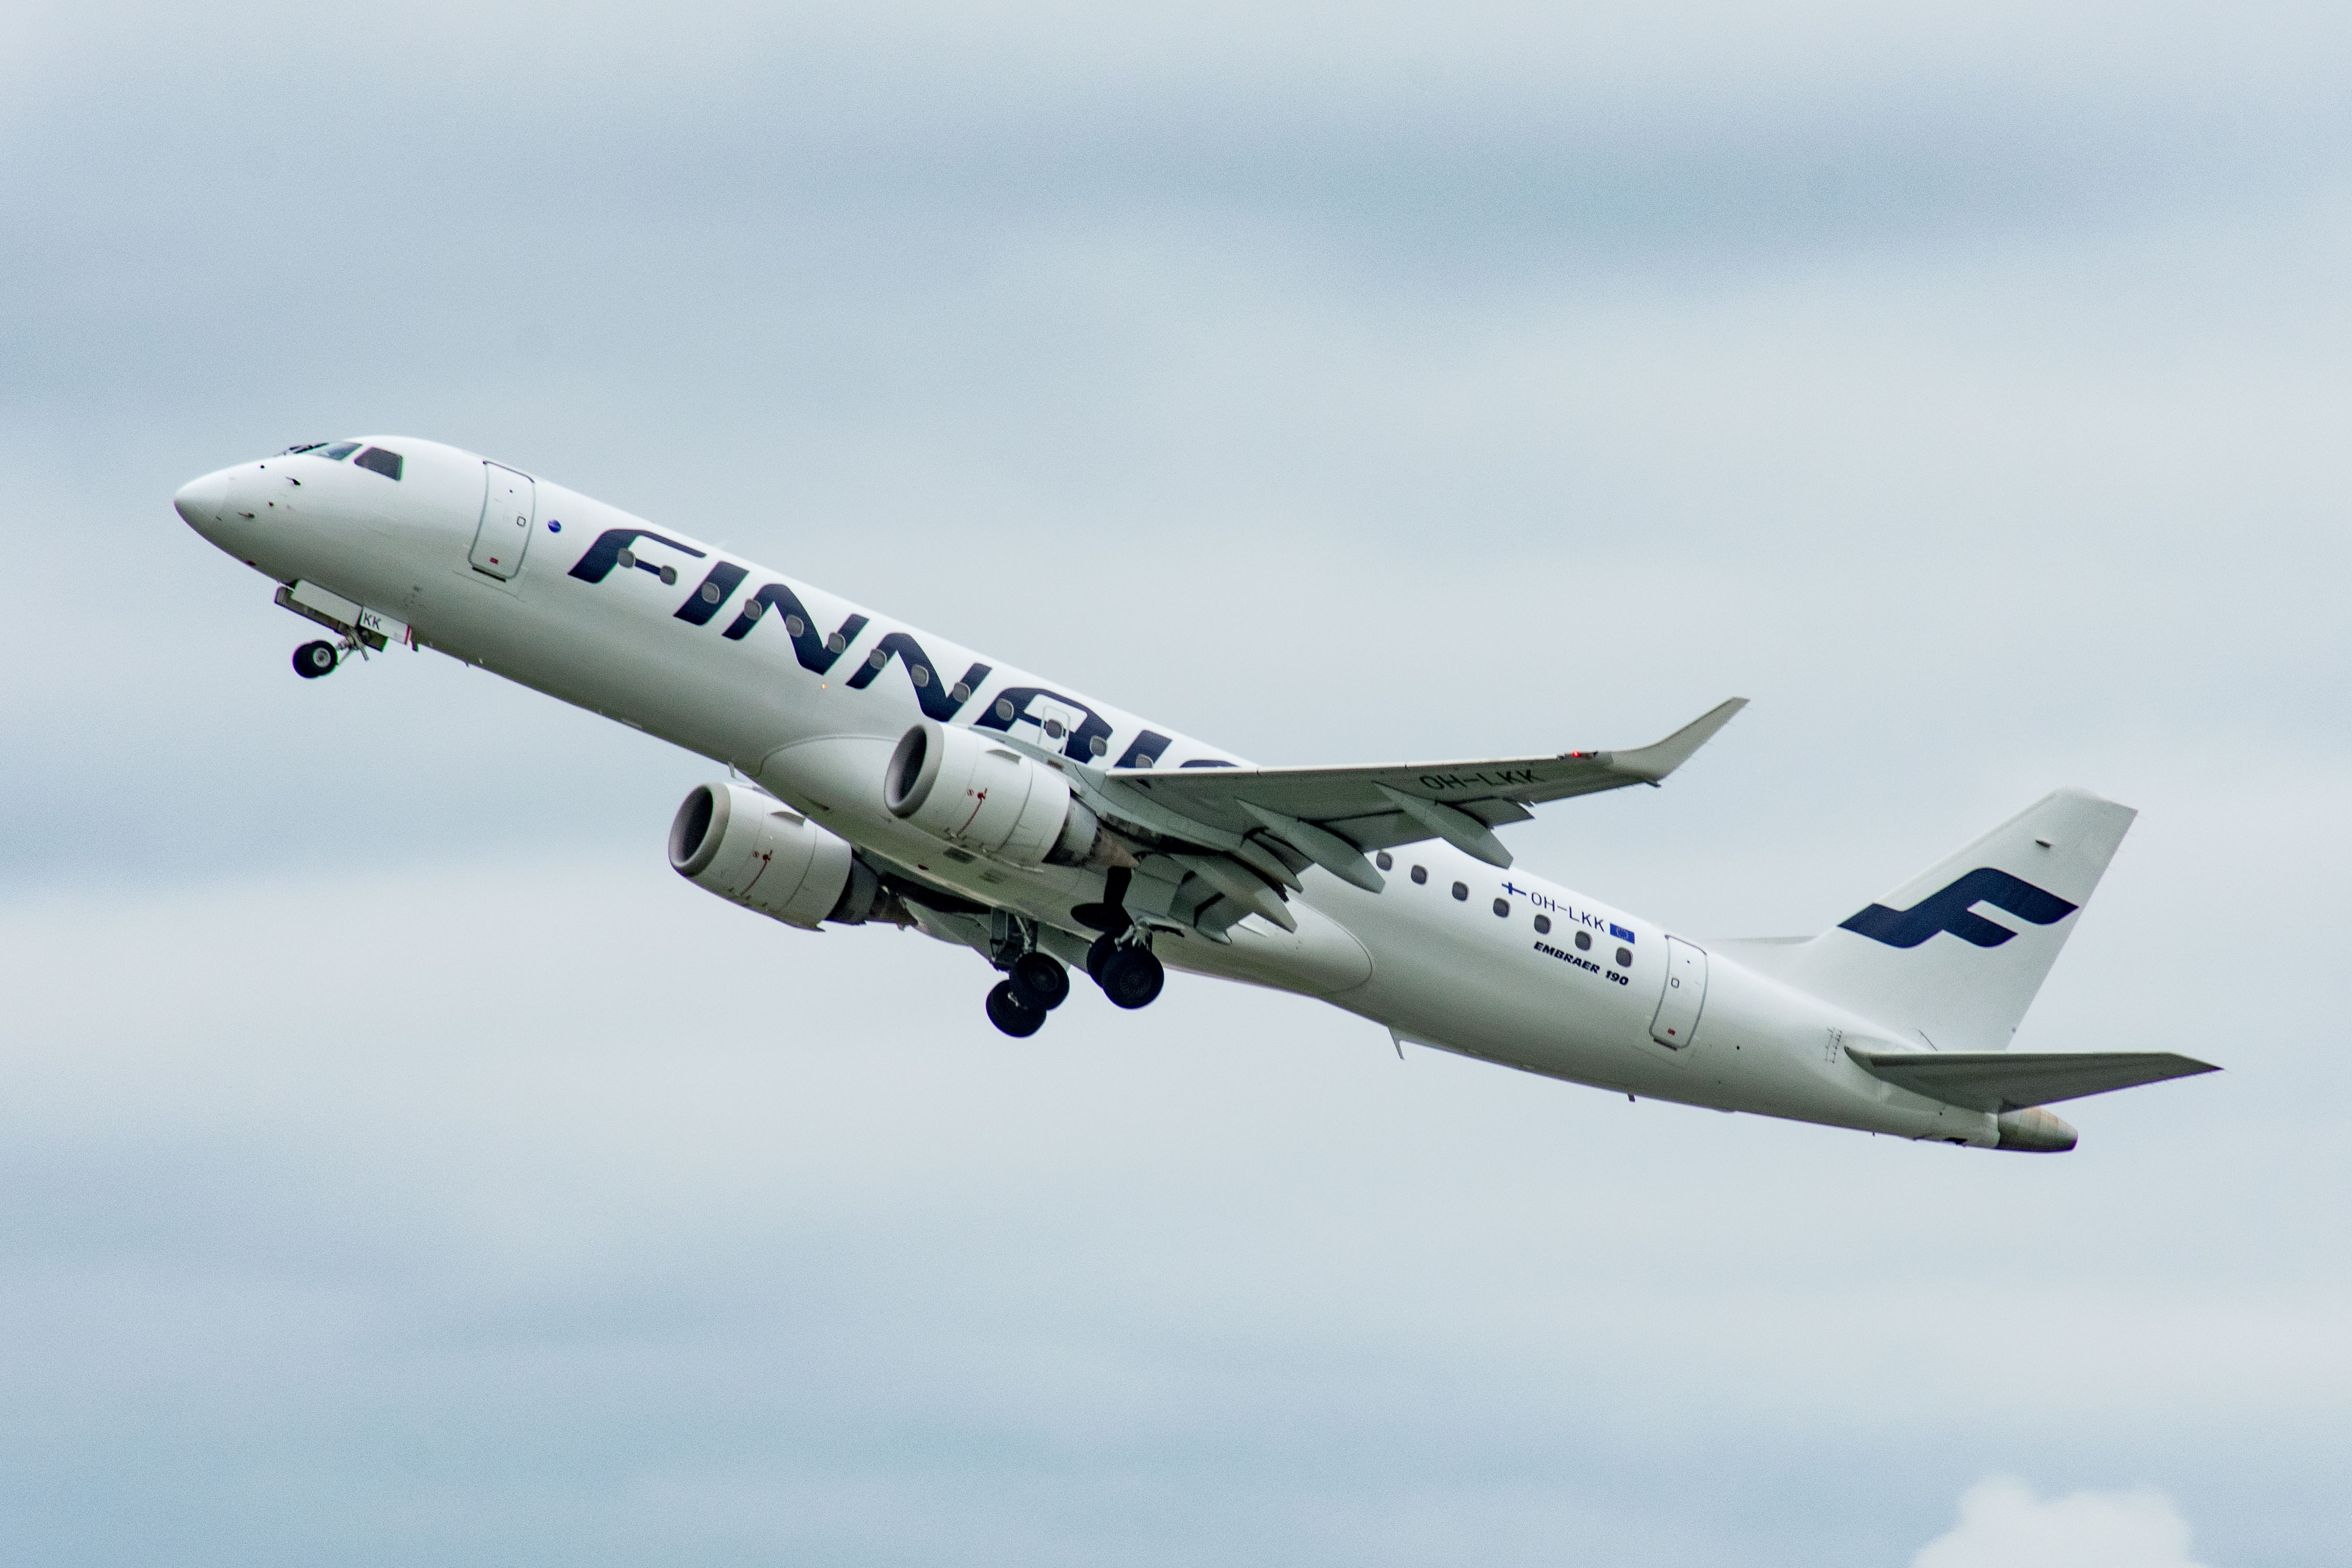 OH-LKK/OHLKK Finnair Embraer ERJ-190 Airframe Information - AVSpotters.com